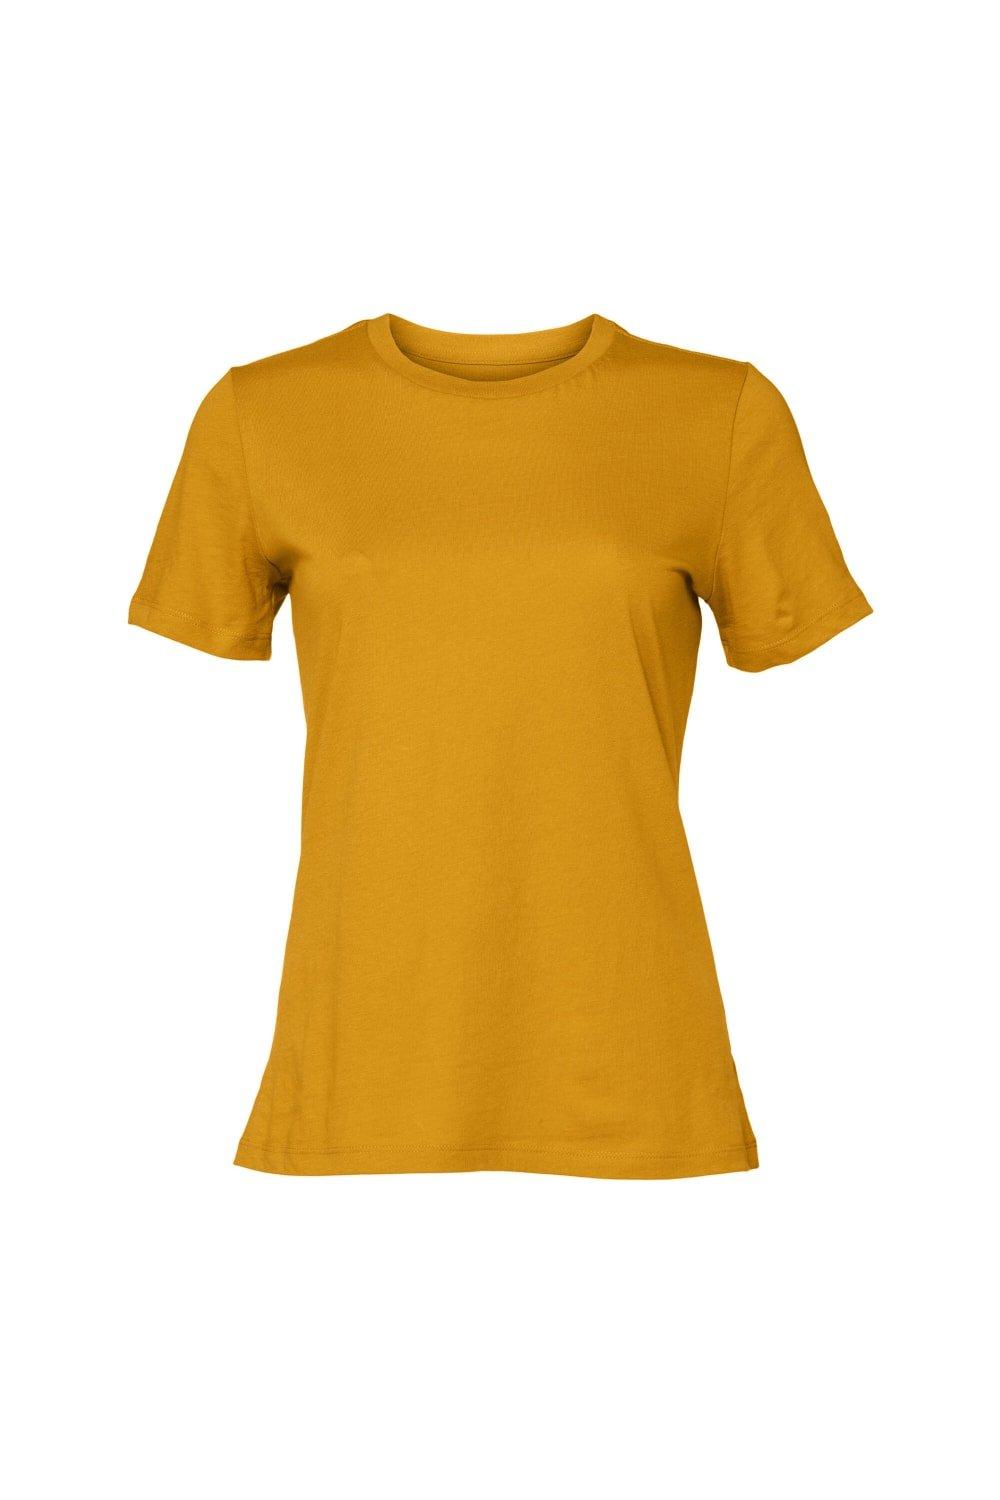 Футболка из джерси с короткими рукавами Bella + Canvas, желтый молодежная футболка из джерси с короткими рукавами bella canvas синий